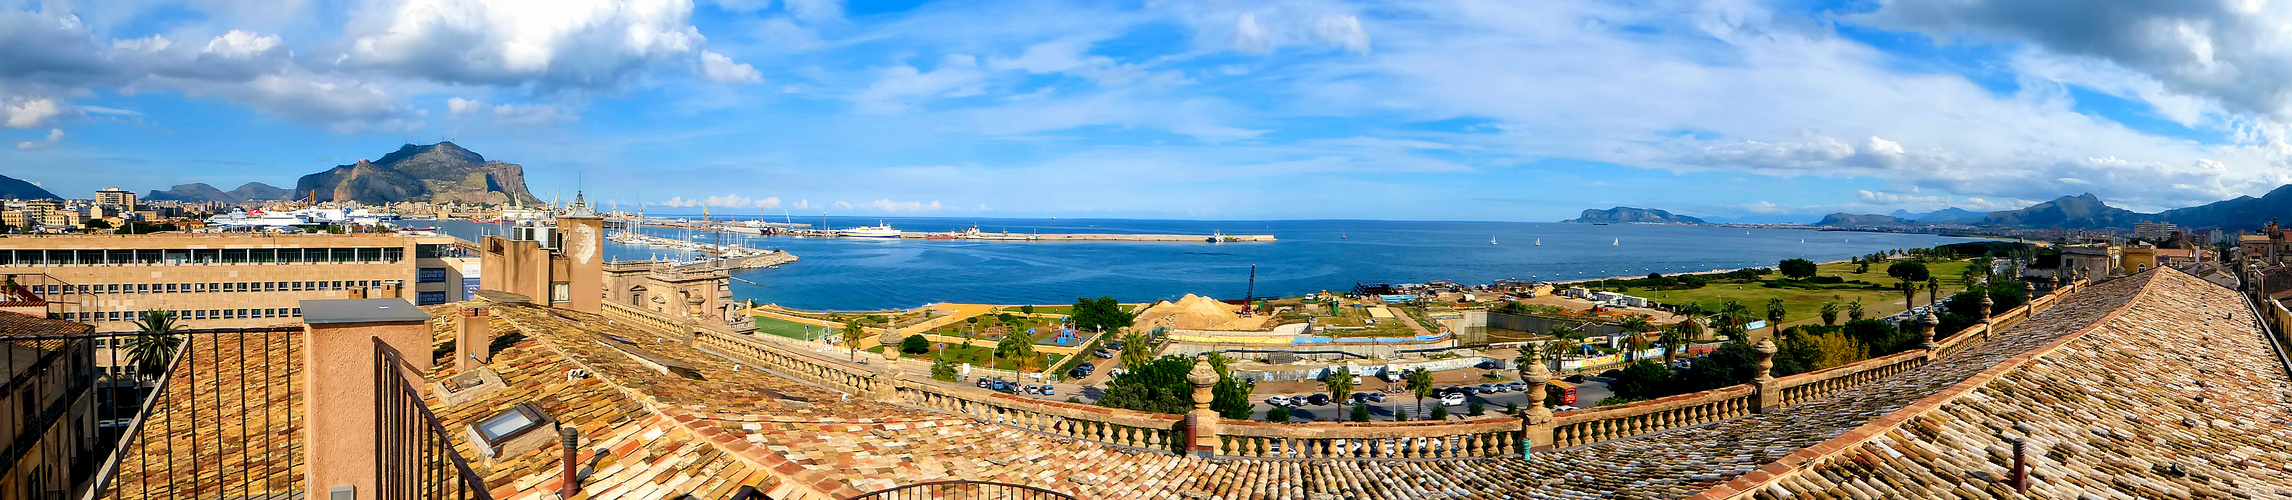 Panorama der Bucht von Palermo